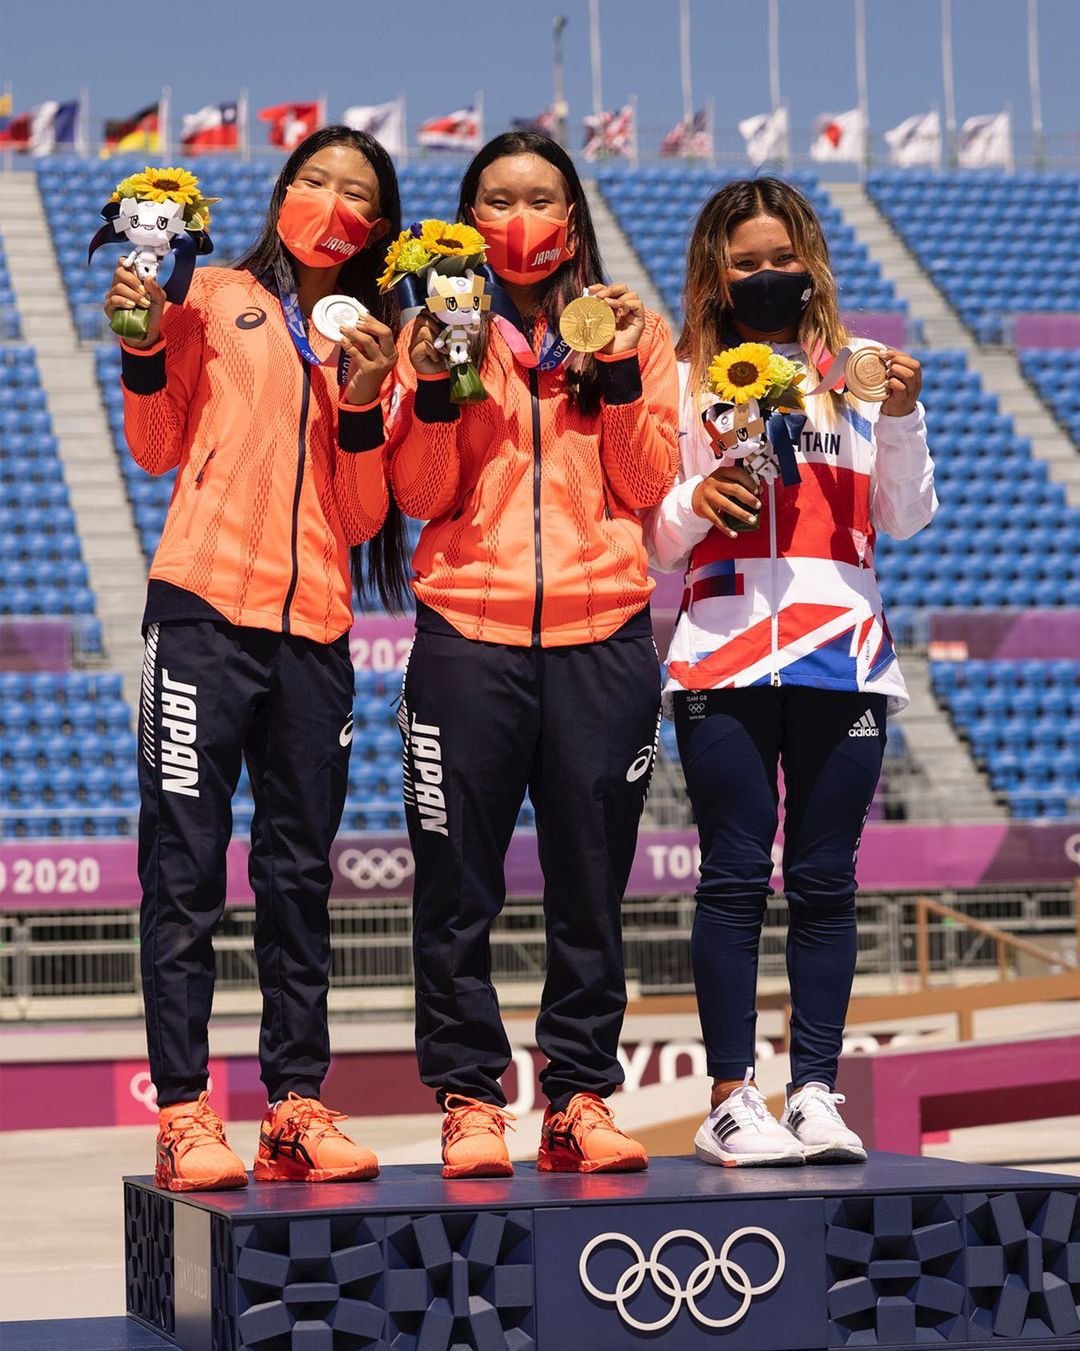 Após boa classificação, Japão quase consegue pódio perfeito no skate park feminino. Ainda assim, saíram da competição com o ouro e prata.